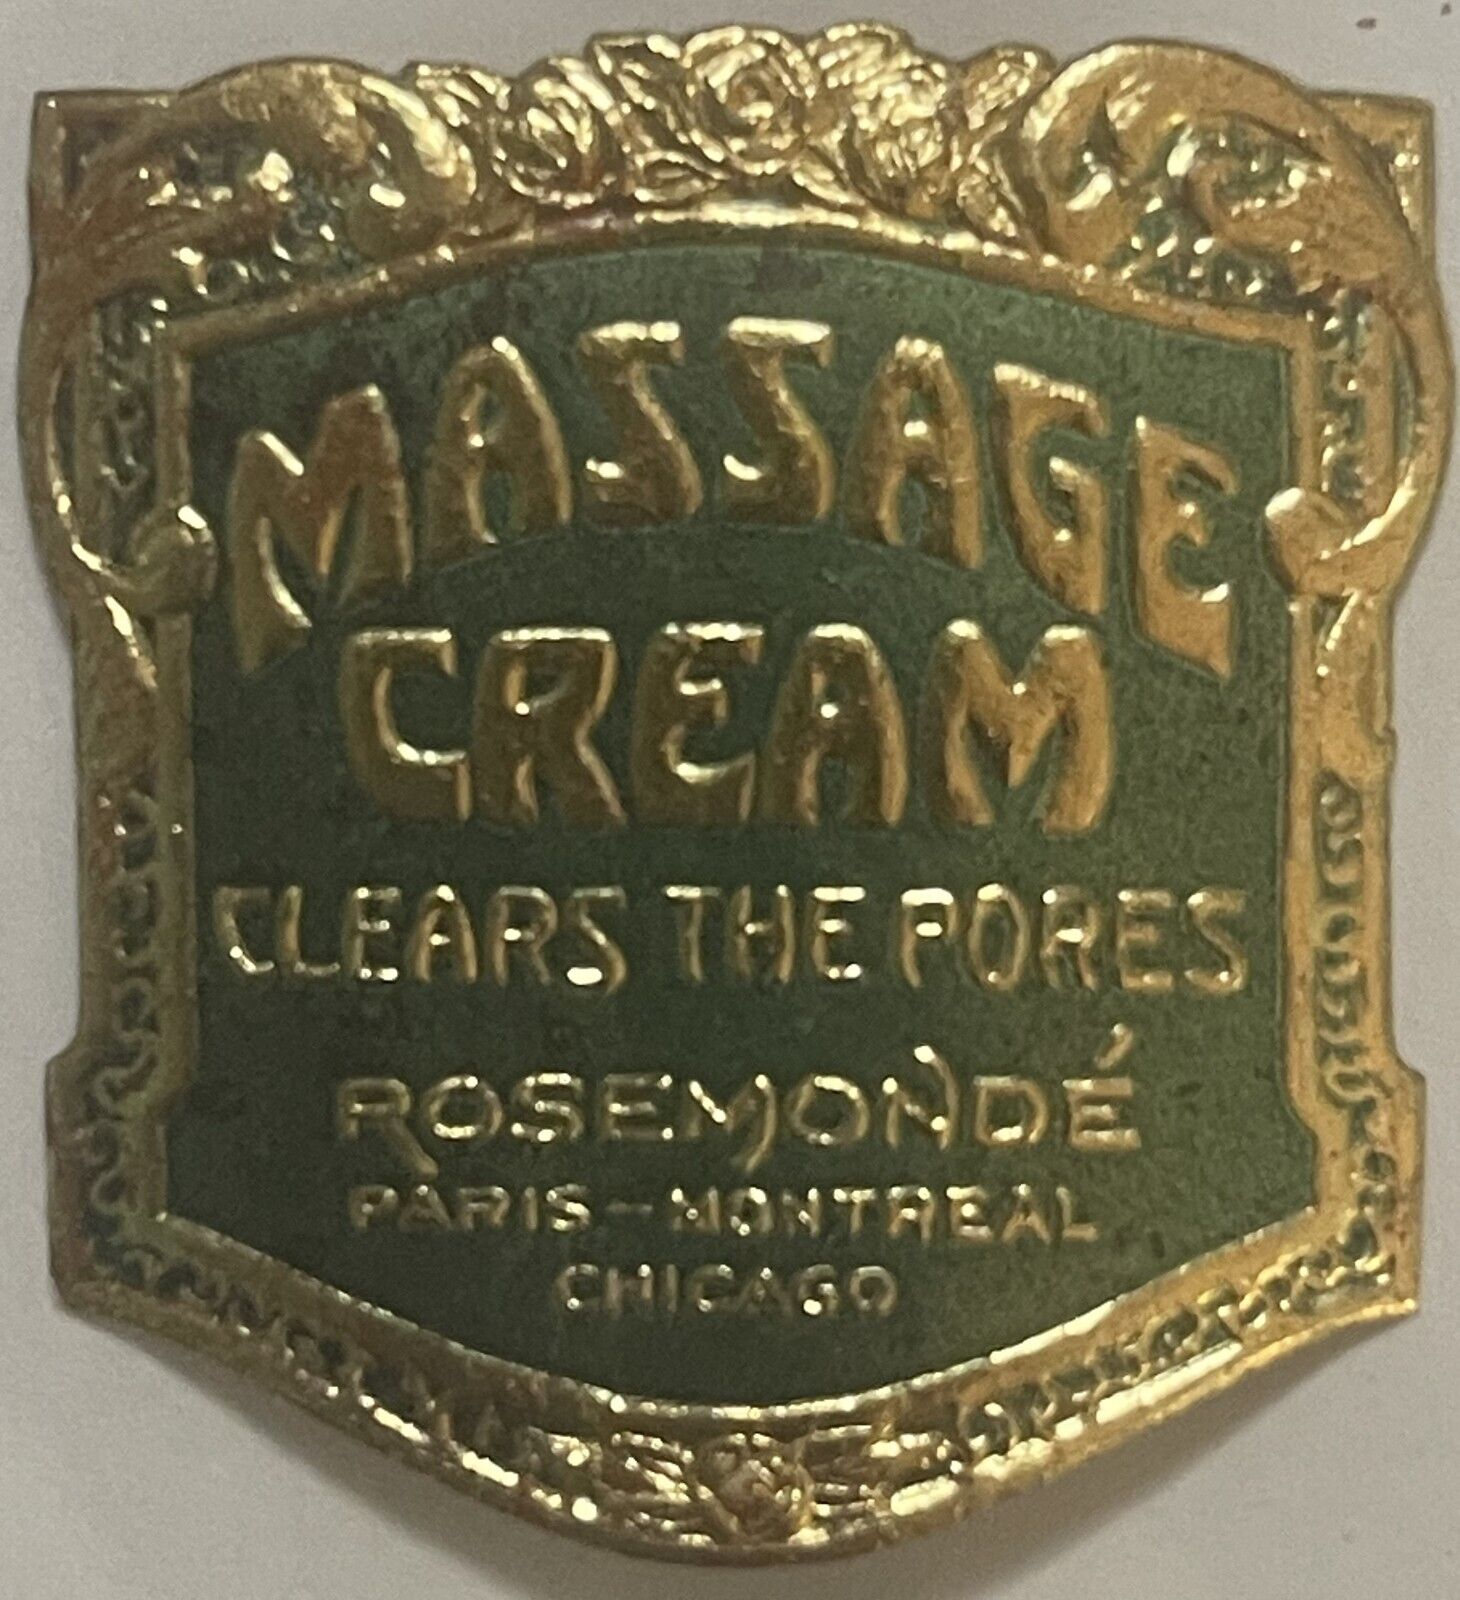 Rare Antique 1910s Massage Cream Gold Embossed Label, 🏰Paris, Montreal, Chicago